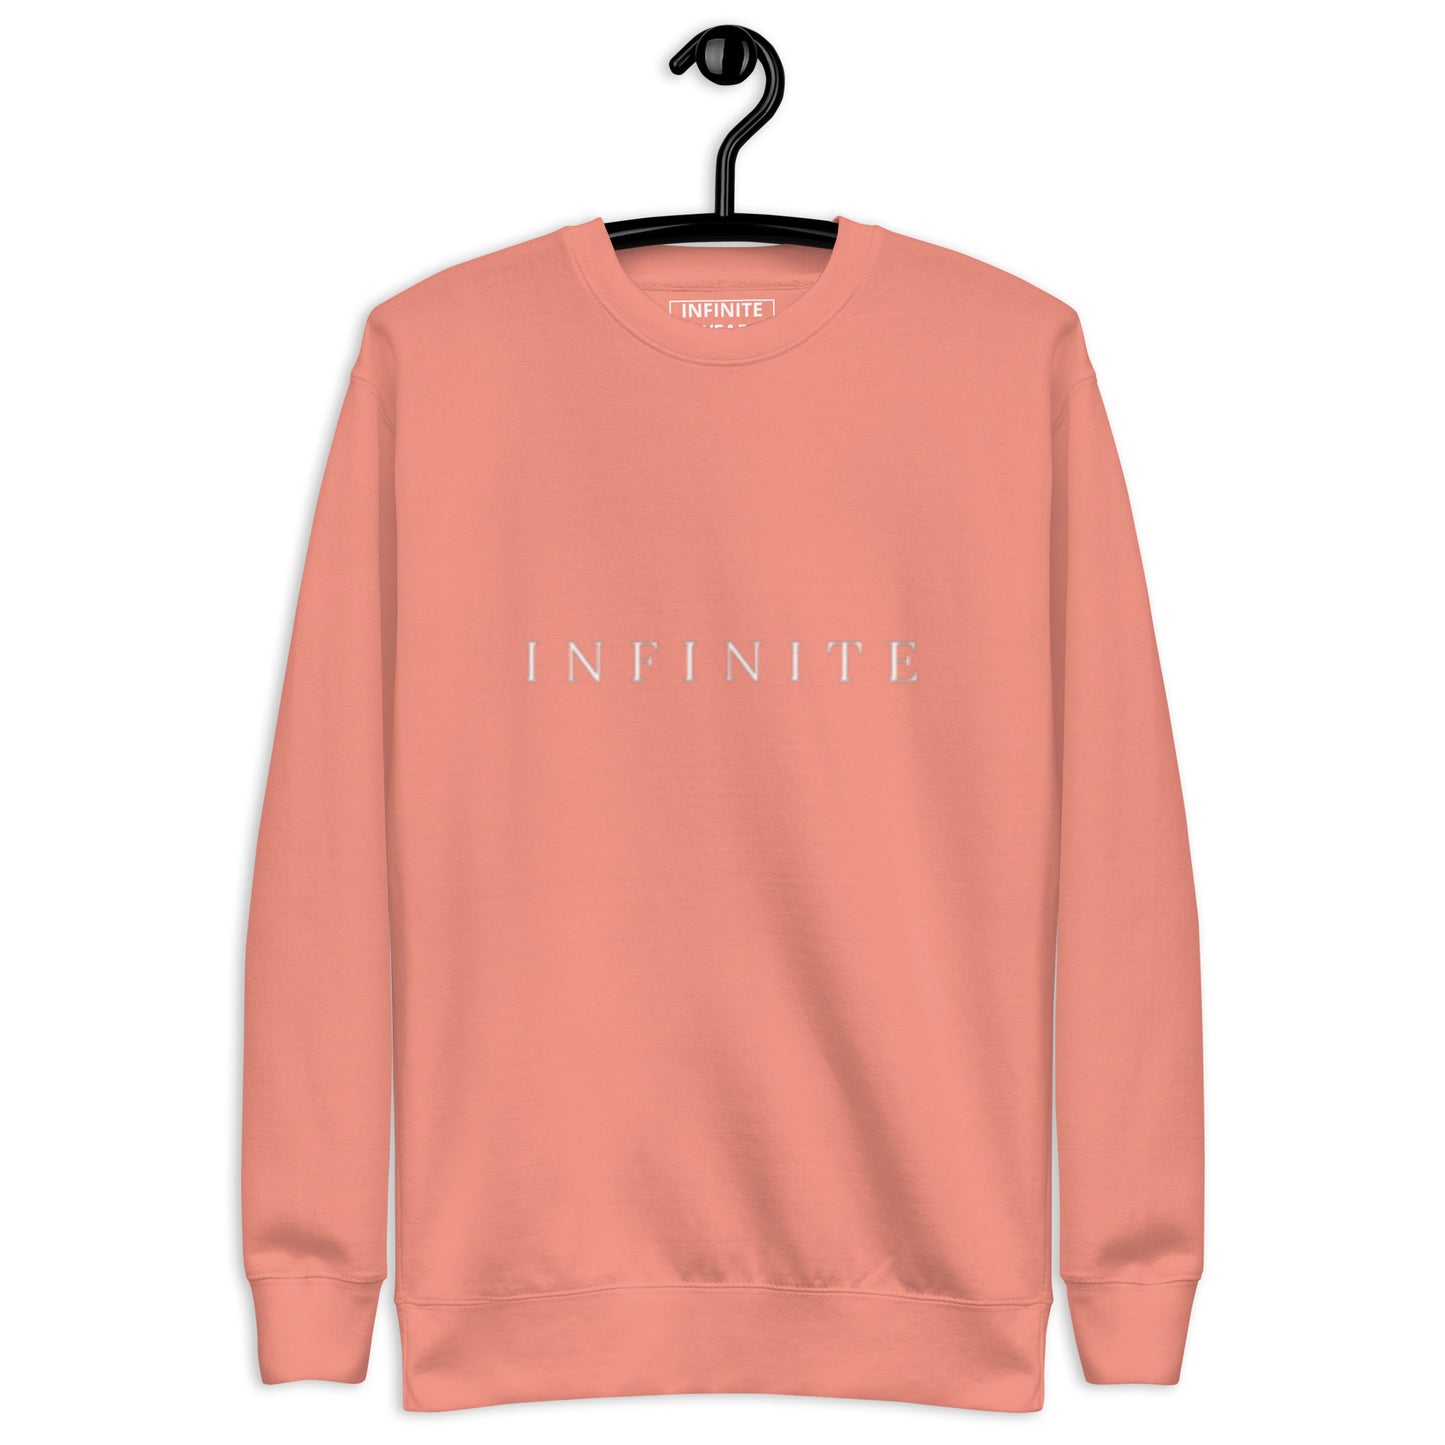 INFINITE Premium Sweatshirt